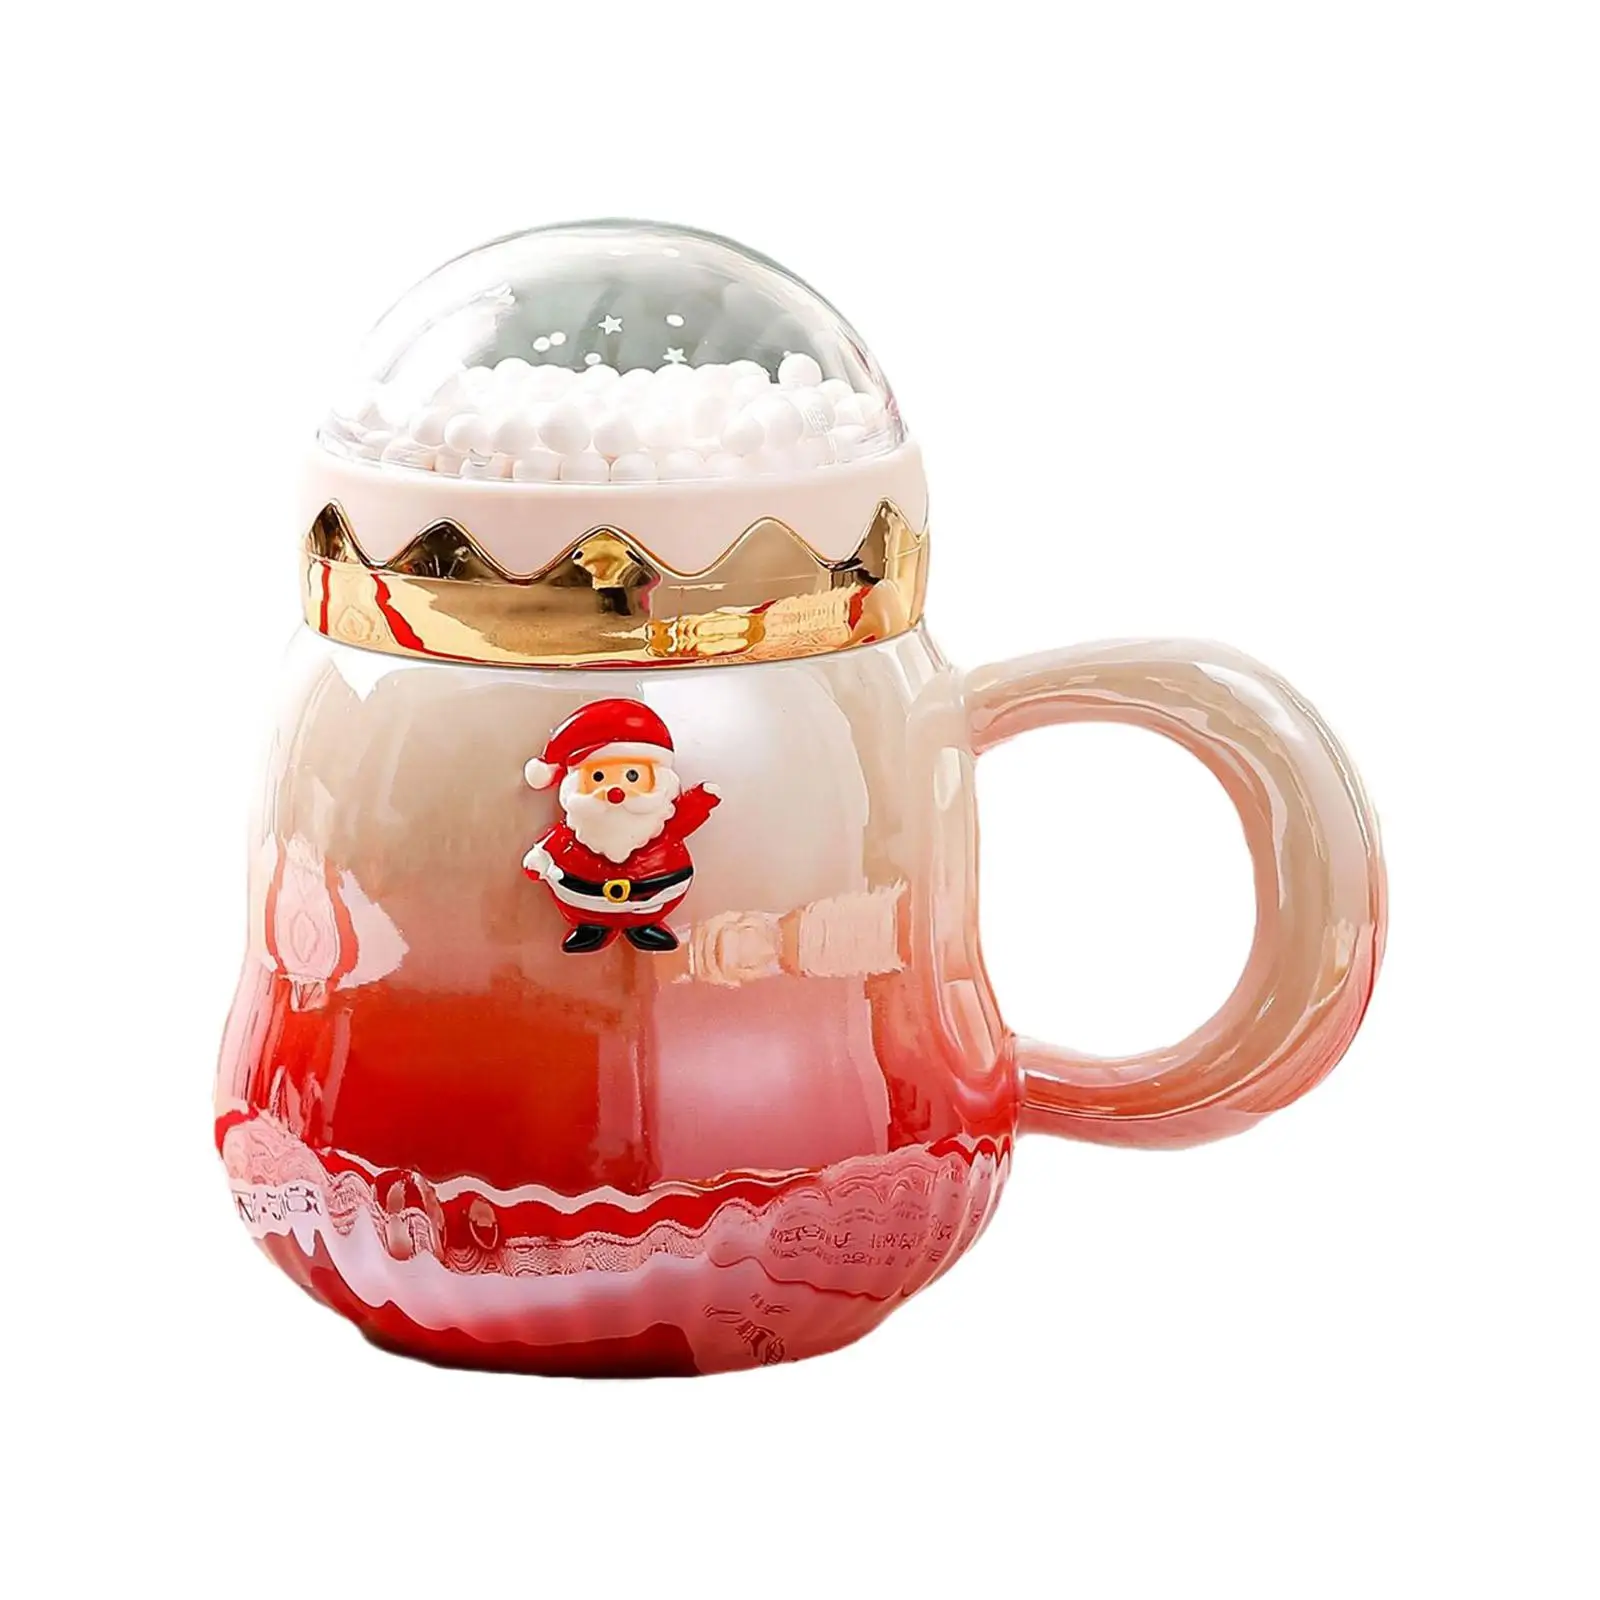 Christmas Coffee Mug 500ml with Handle and Lid Espresso Latte Mug Festive Mug Milk Chocolate Juice Mug for Xmas Christmas Family